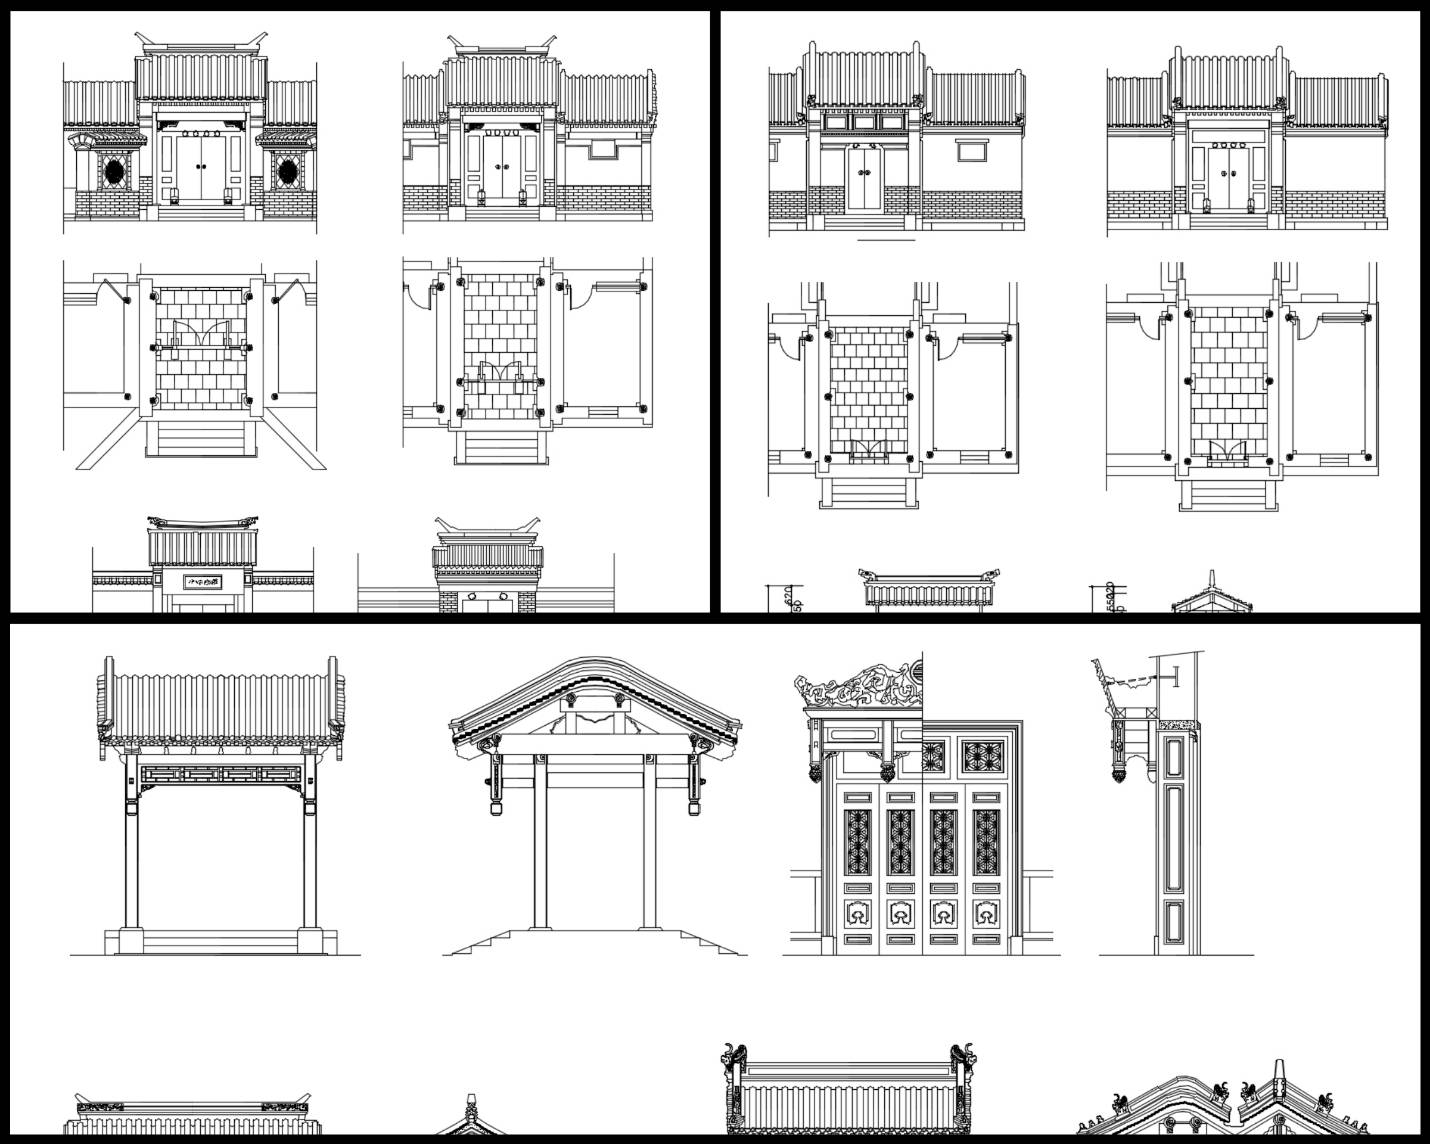 大門,中國風古典設計,中式元素及精選案例,,門與窗,隔斷,裝飾,中國景觀庭園元素,窗戶設計,門設計,,中國風牆面樣式,剖立面設計圖